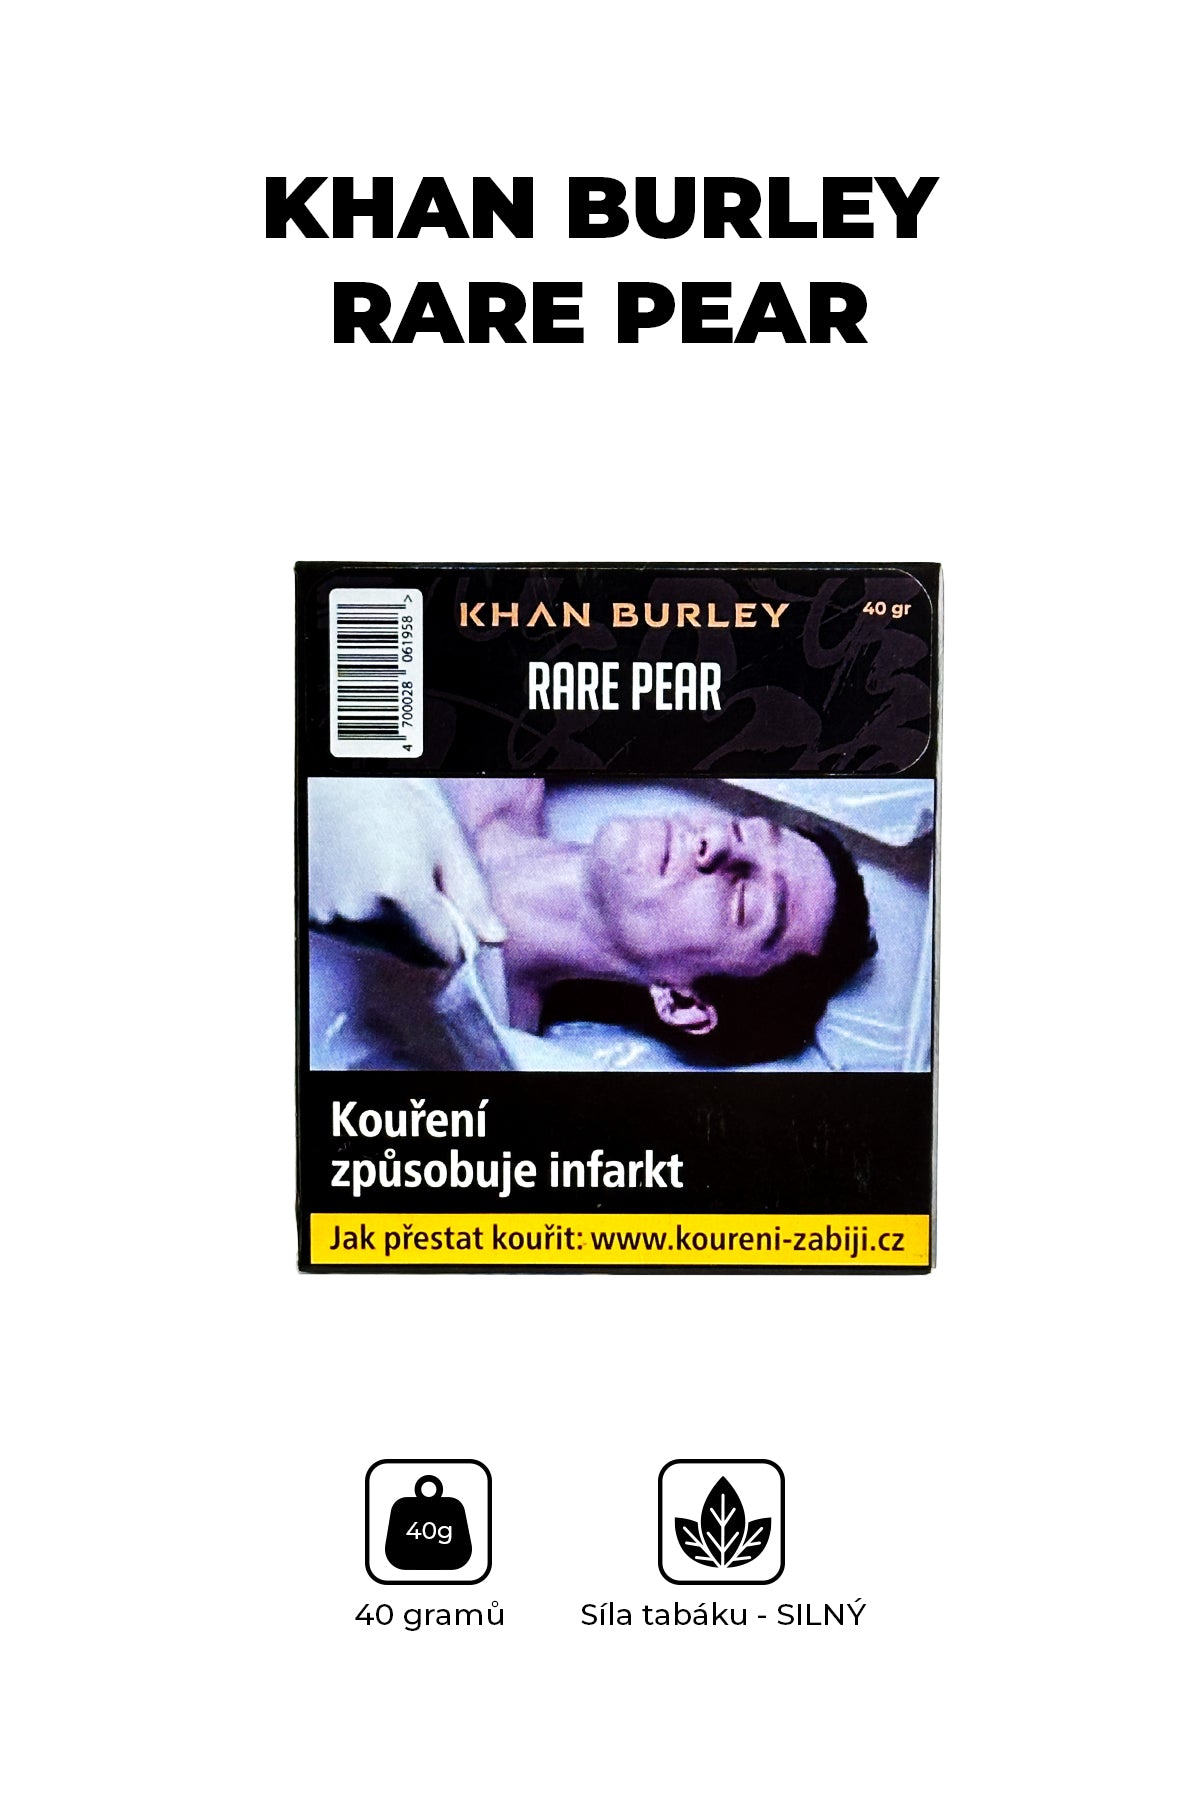 Tabák - Khan Burley 40g - Rare Pear